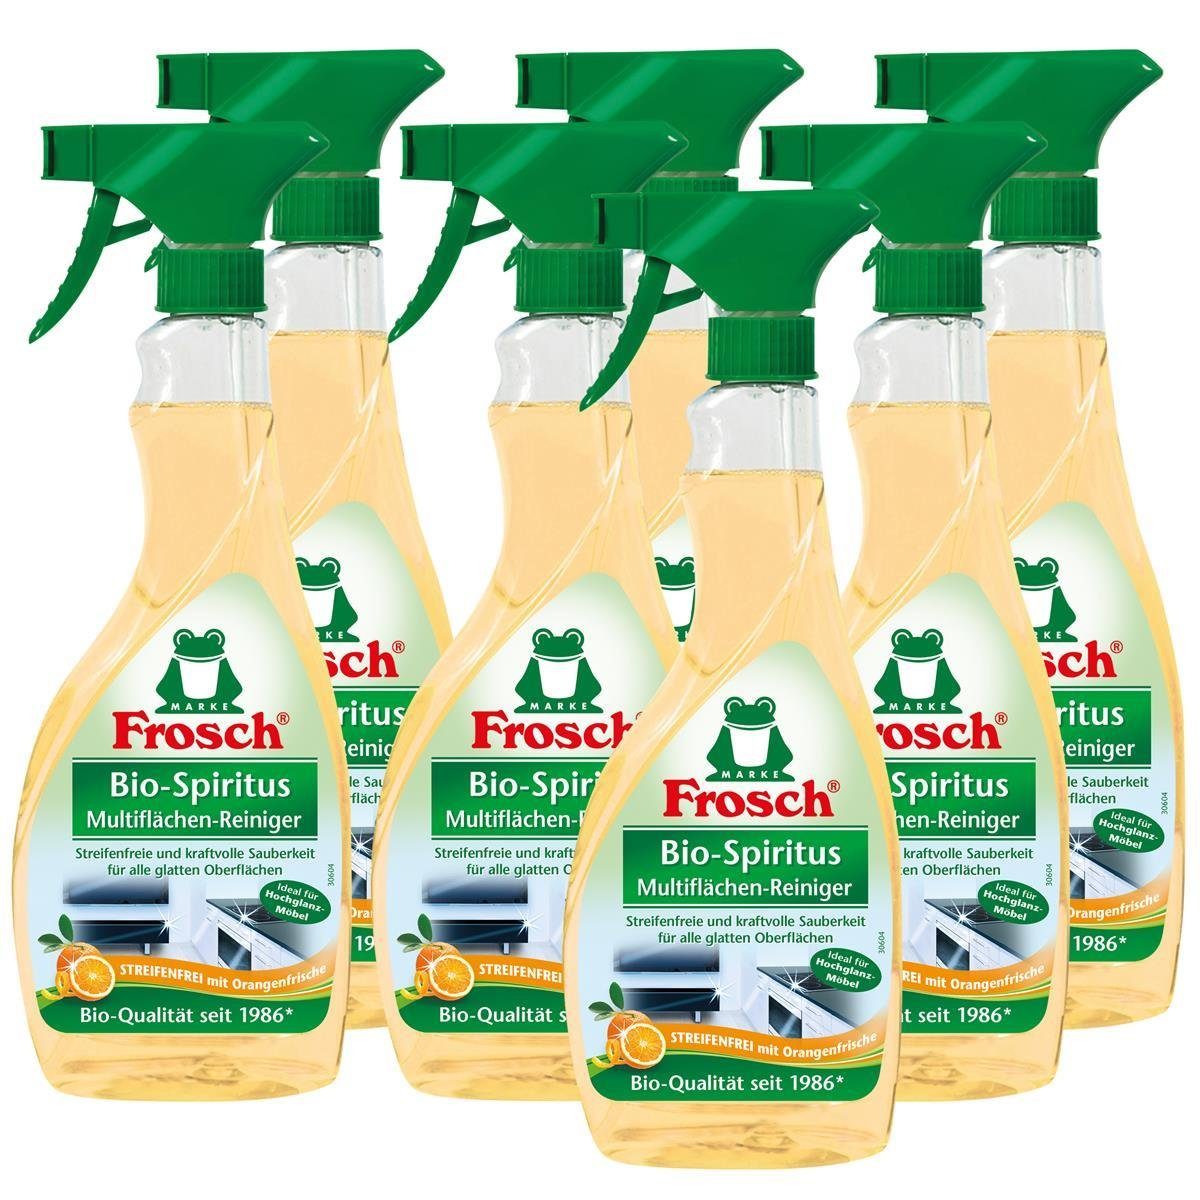 FROSCH 7x Frosch Orangen Multiflächen-Reiniger Sprühflasche 500 ml Glasreiniger